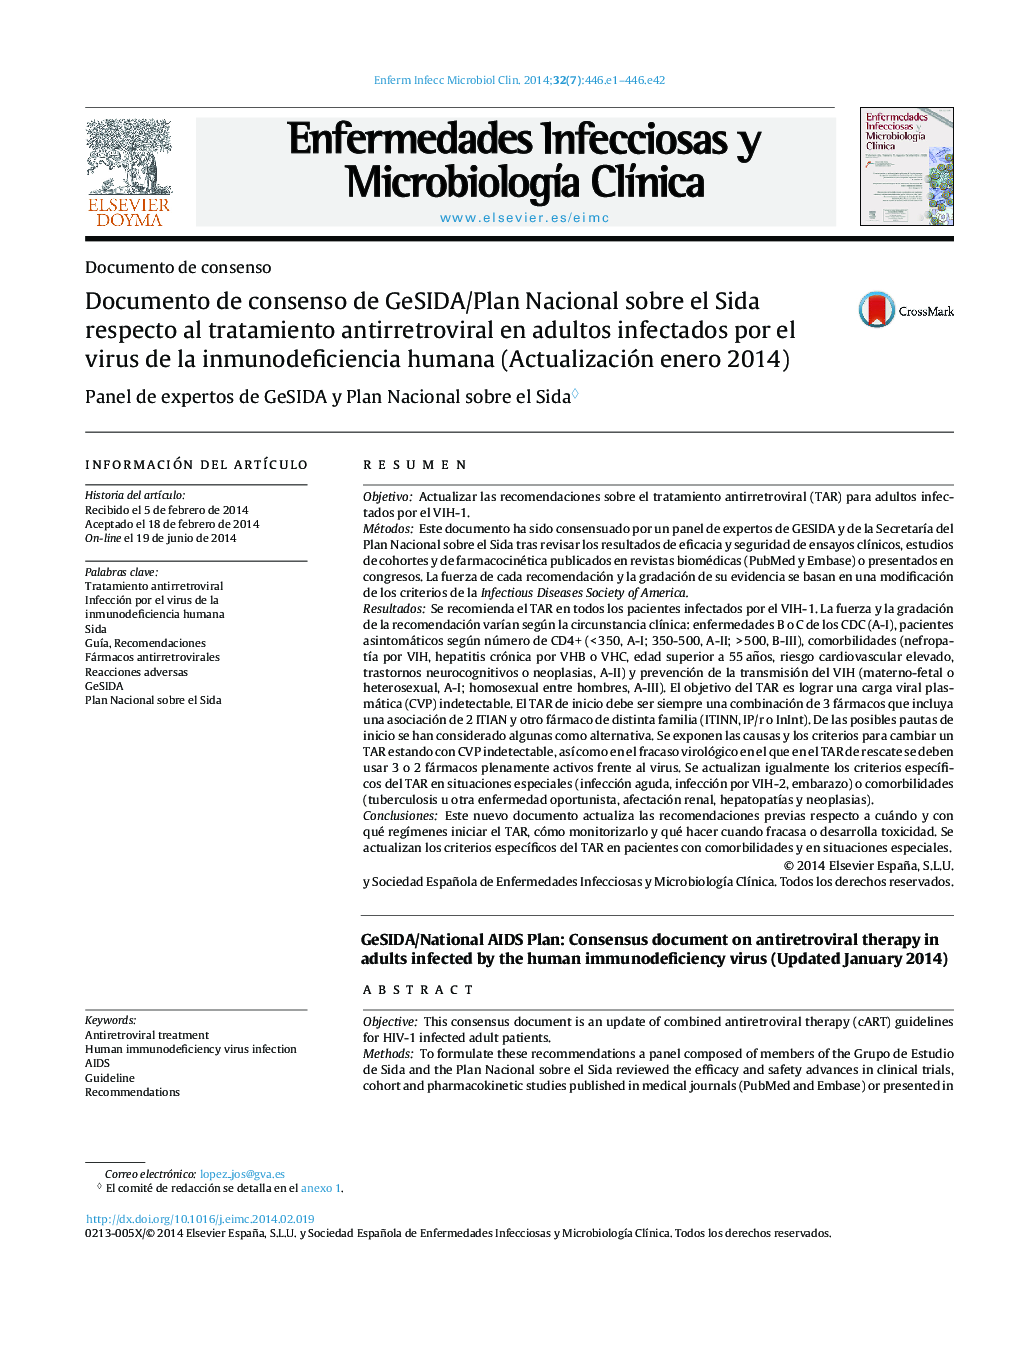 Documento de consenso de GeSIDA/Plan Nacional sobre el Sida respecto al tratamiento antirretroviral en adultos infectados por el virus de la inmunodeficiencia humana (Actualización enero 2014)